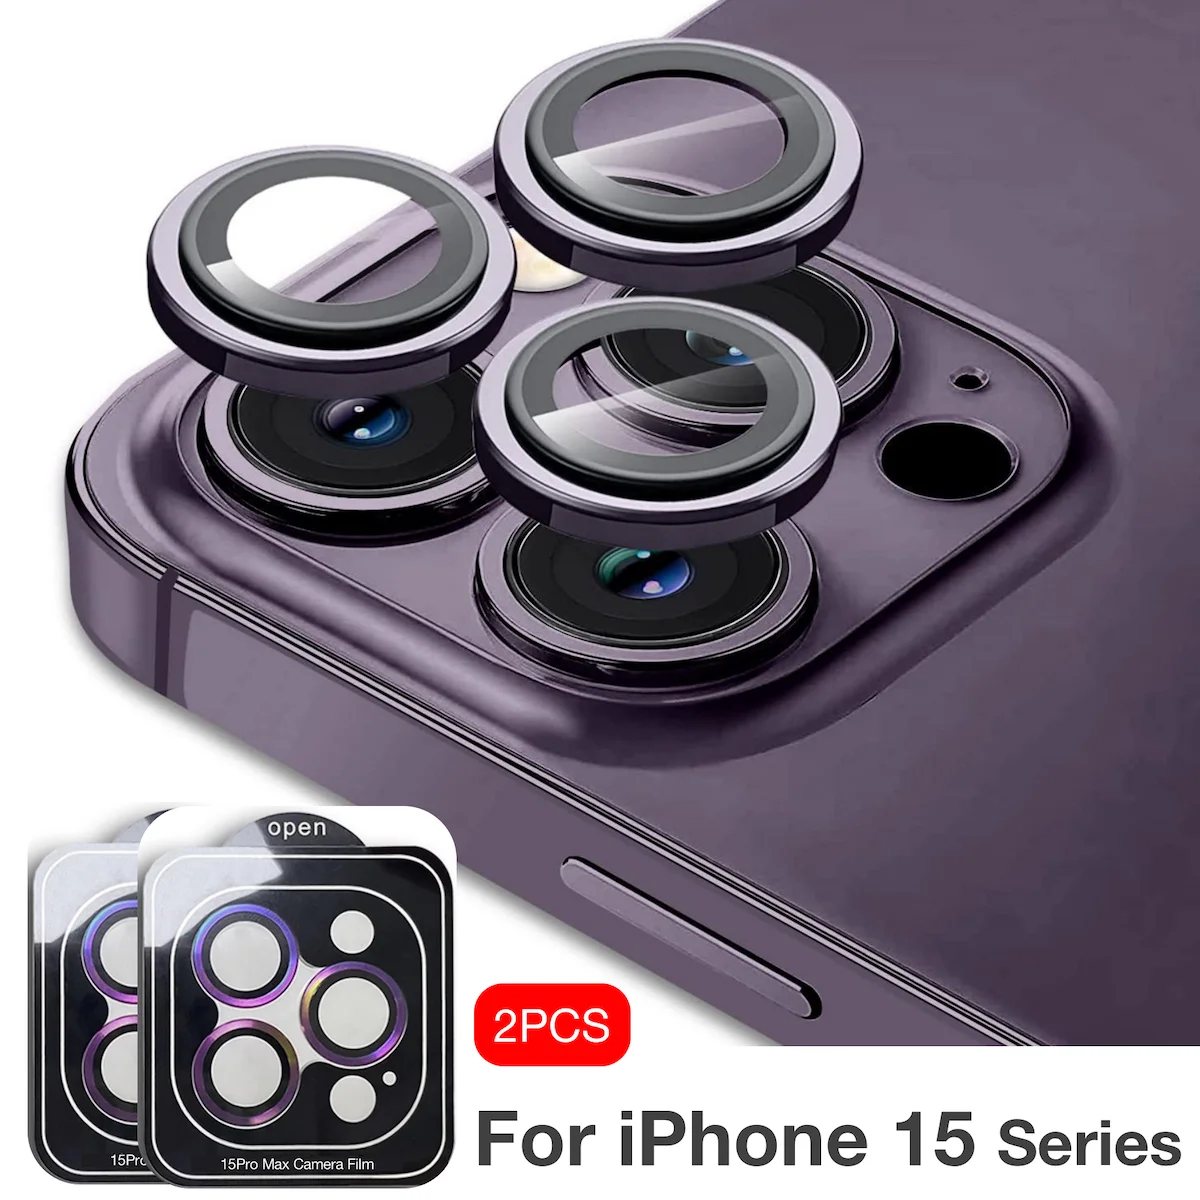 ДЛЯ IPHONE15 PLUS iPhone 15 Pro Max Stealth Камера резистивная пленка Защитите фотографию ведио запись сделать снимок резистивная пленка